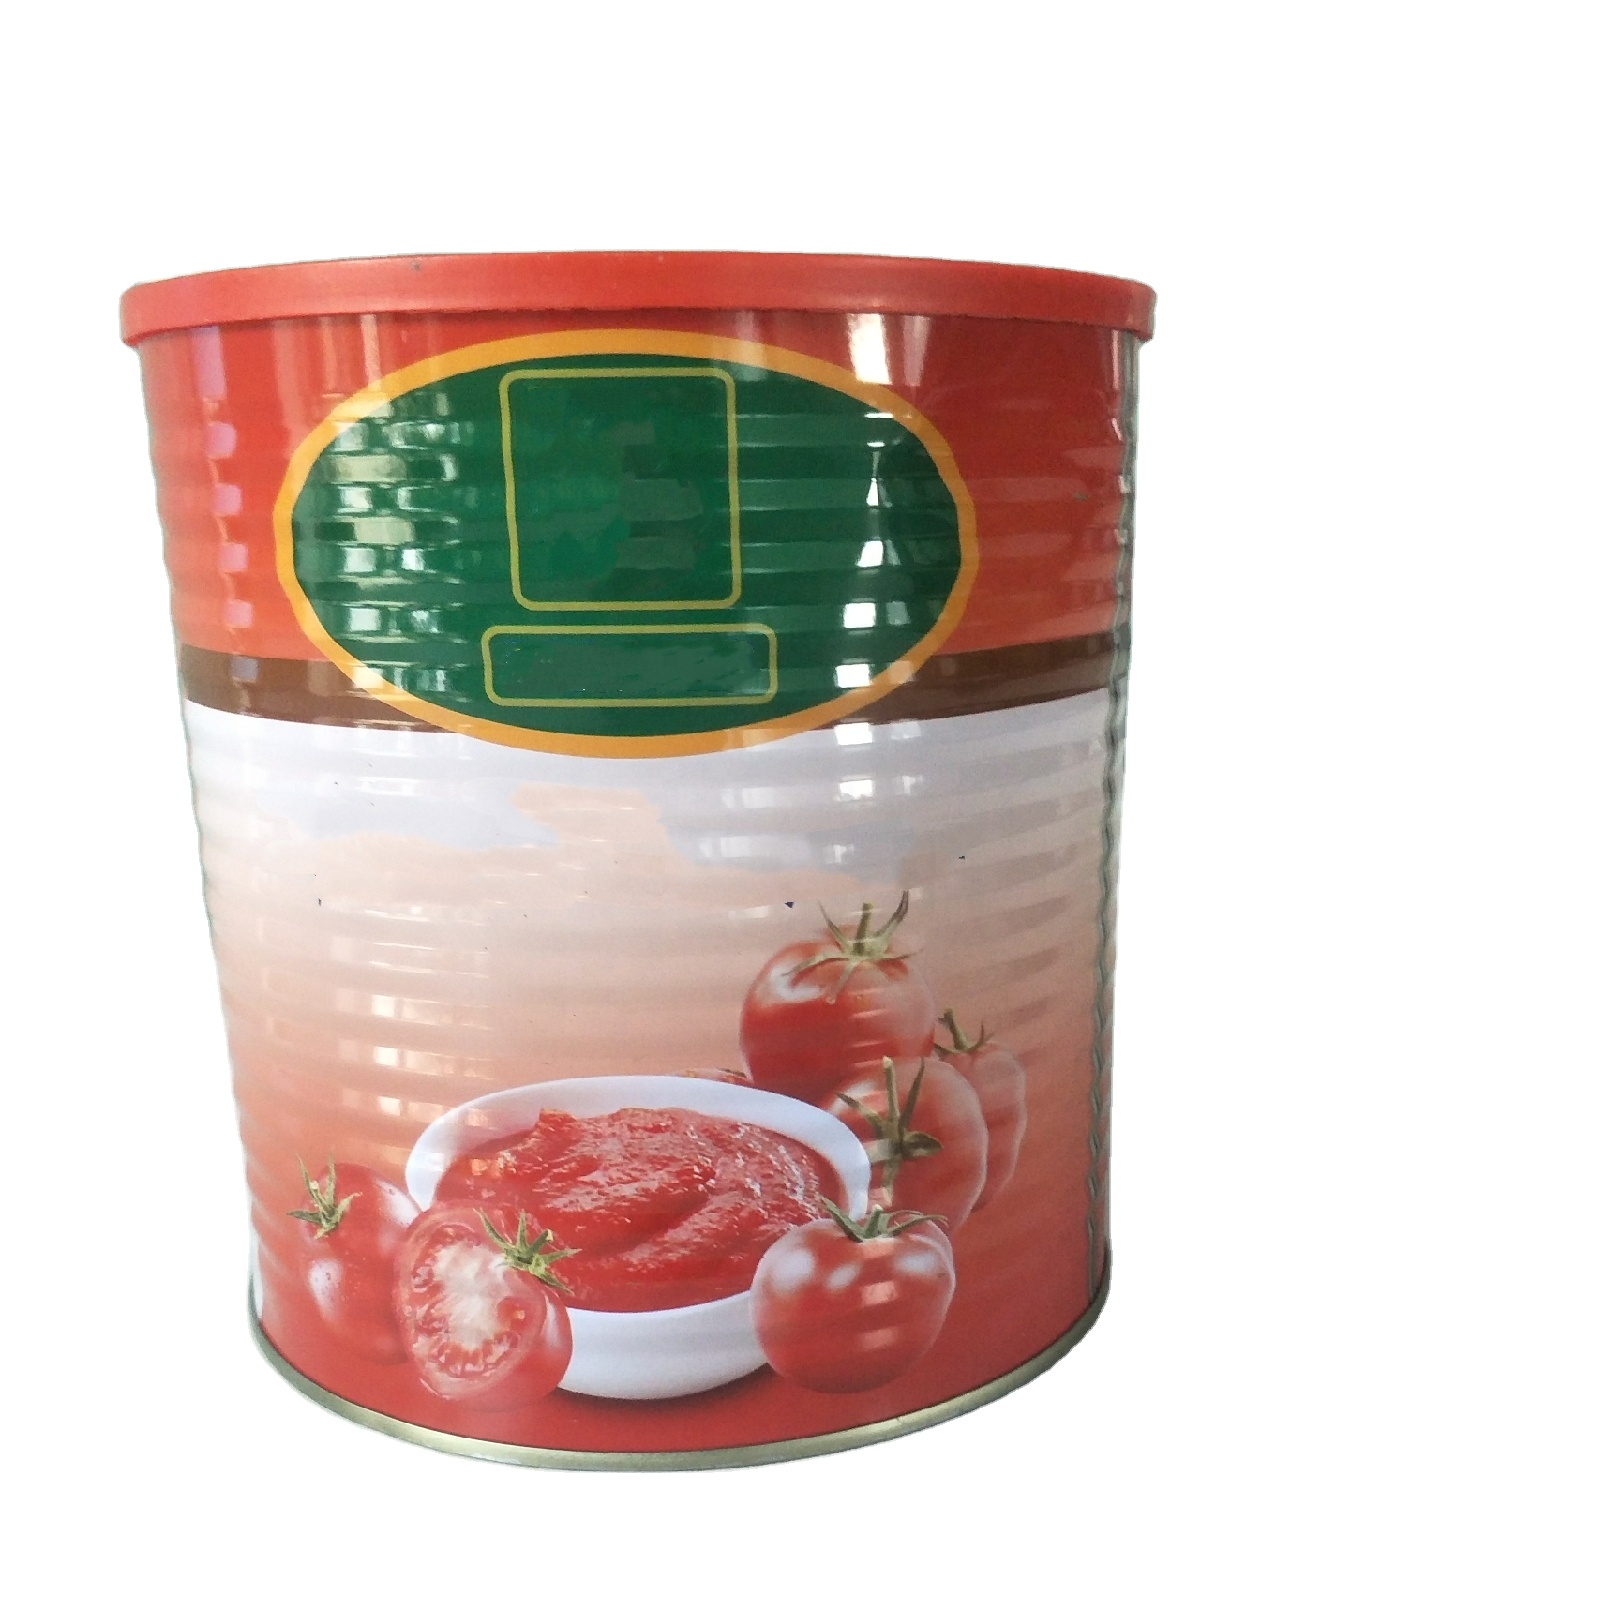 3 kg märkesvaror tomatsåsprodukt